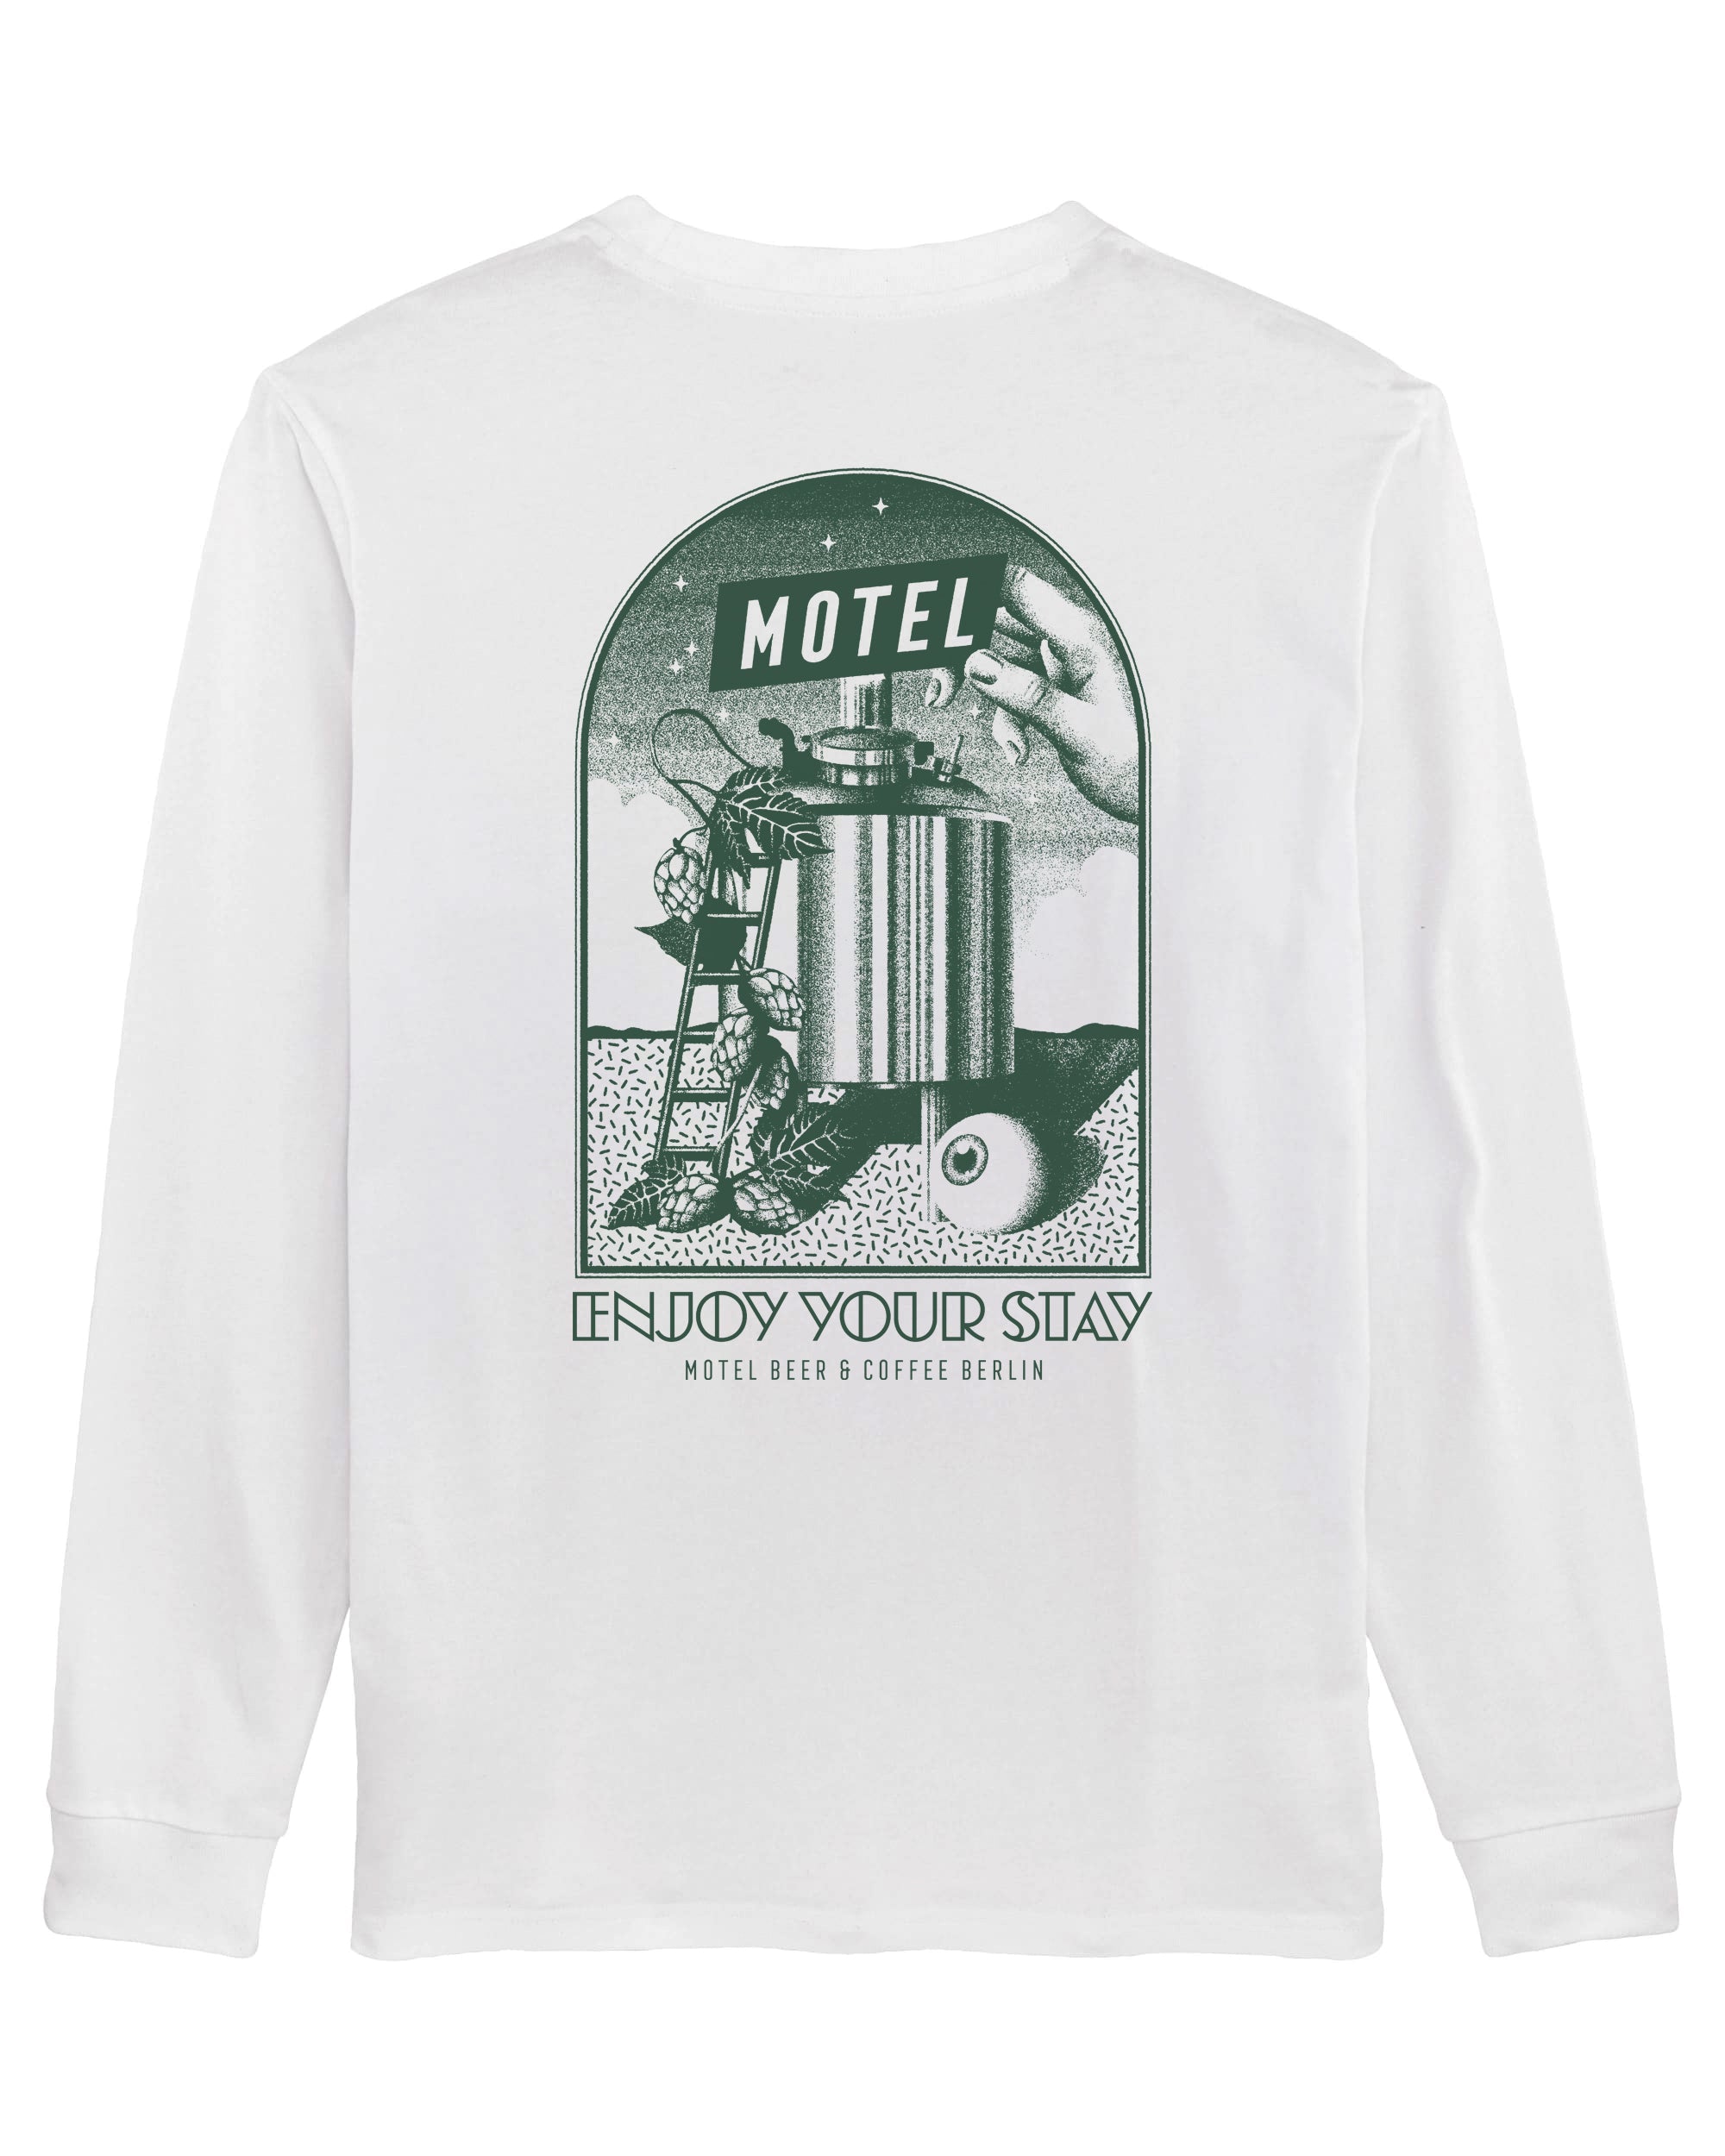 Motel Long-Sleeve T-Shirt by Max Löffler - Organic Cotton